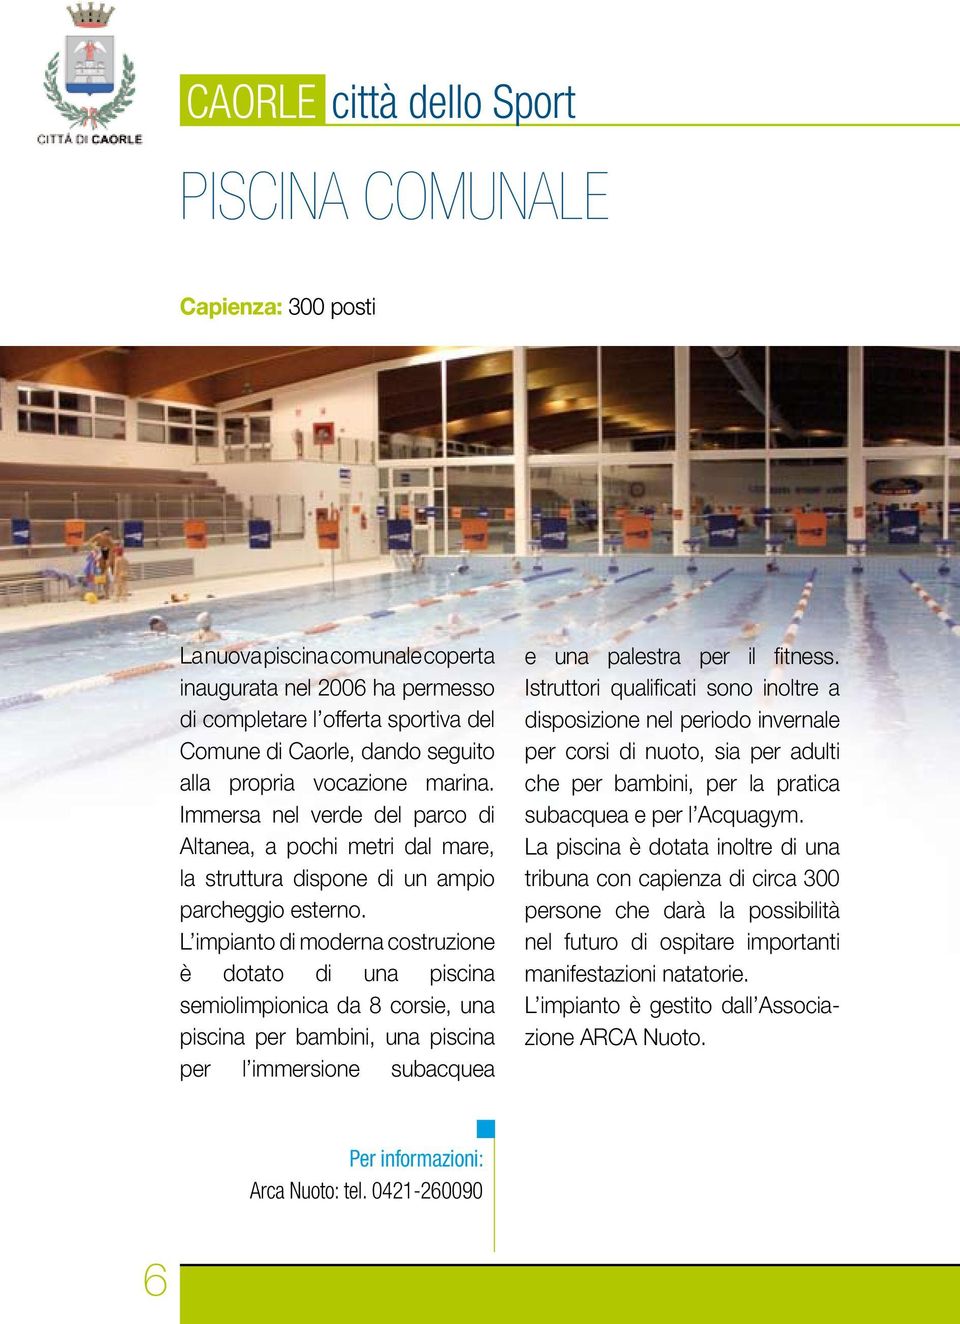 L impianto di moderna costruzione è dotato di una piscina semiolimpionica da 8 corsie, una piscina per bambini, una piscina per l immersione subacquea e una palestra per il fitness.